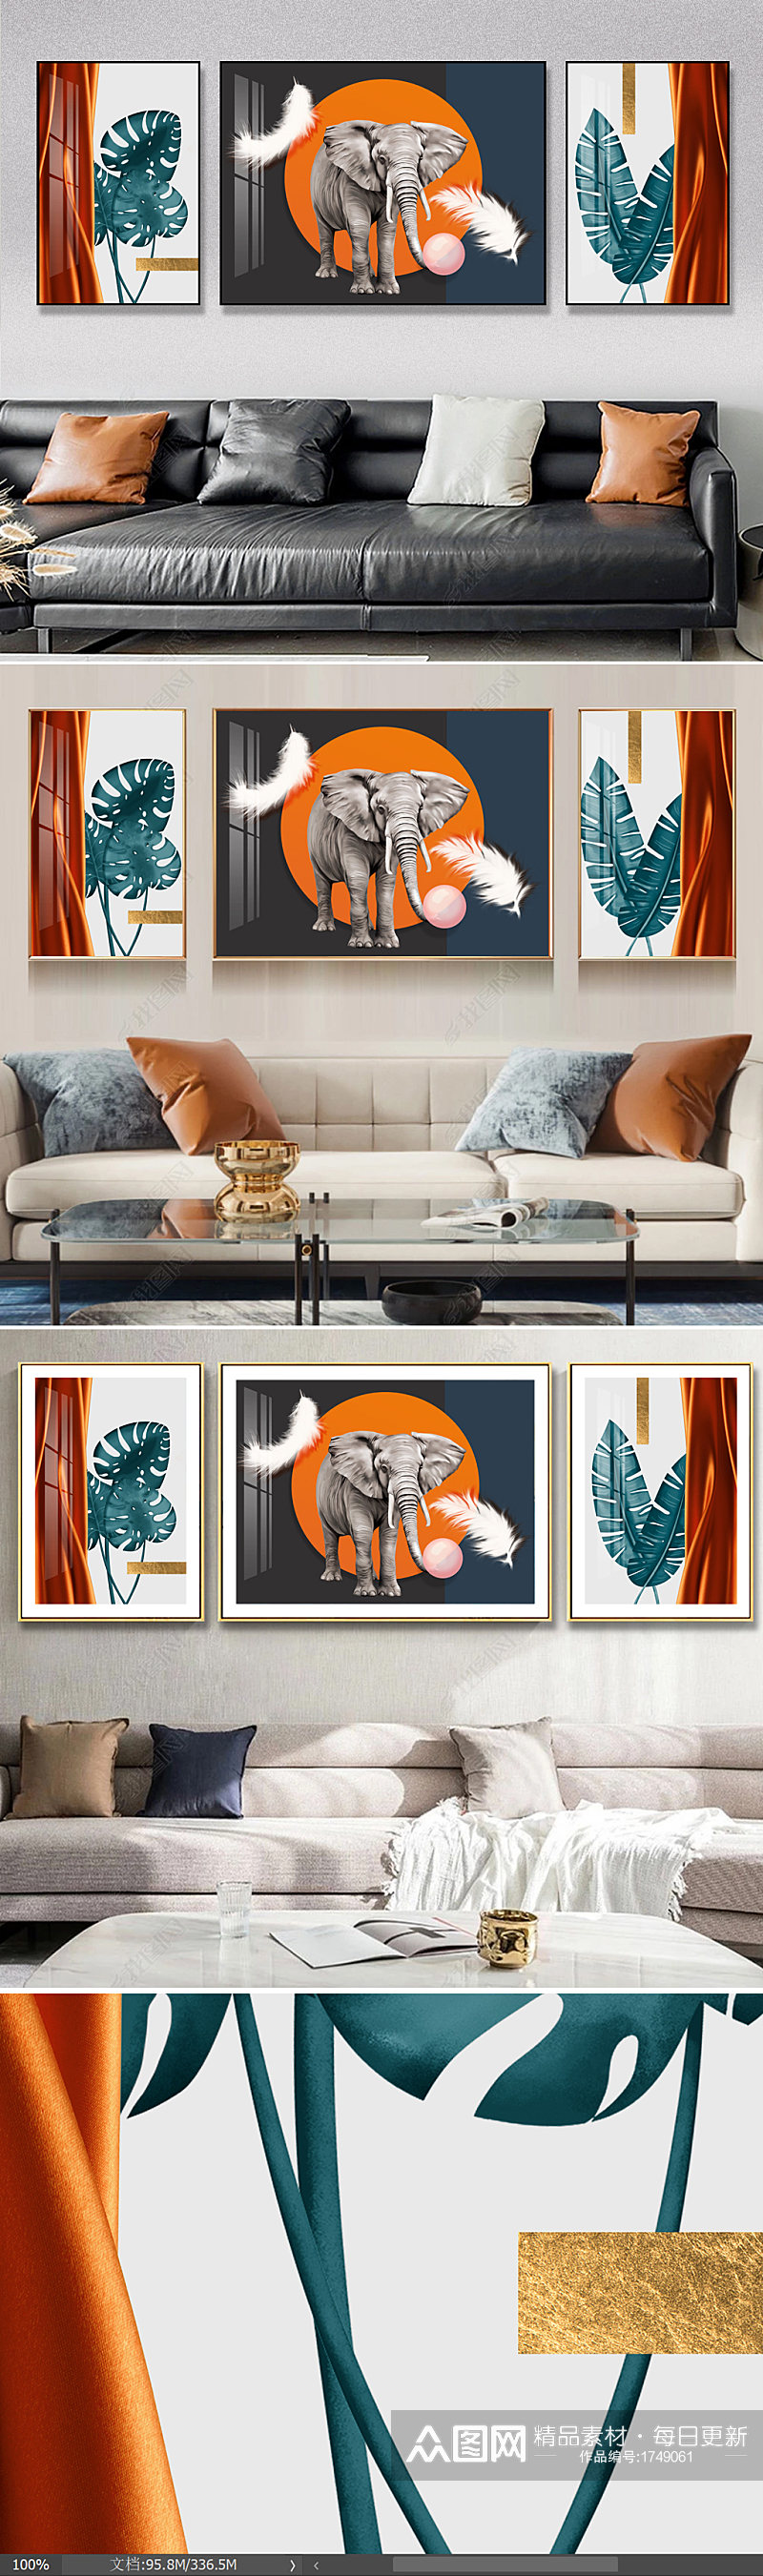 抽象动物几何轻奢现代简约客厅装饰画素材